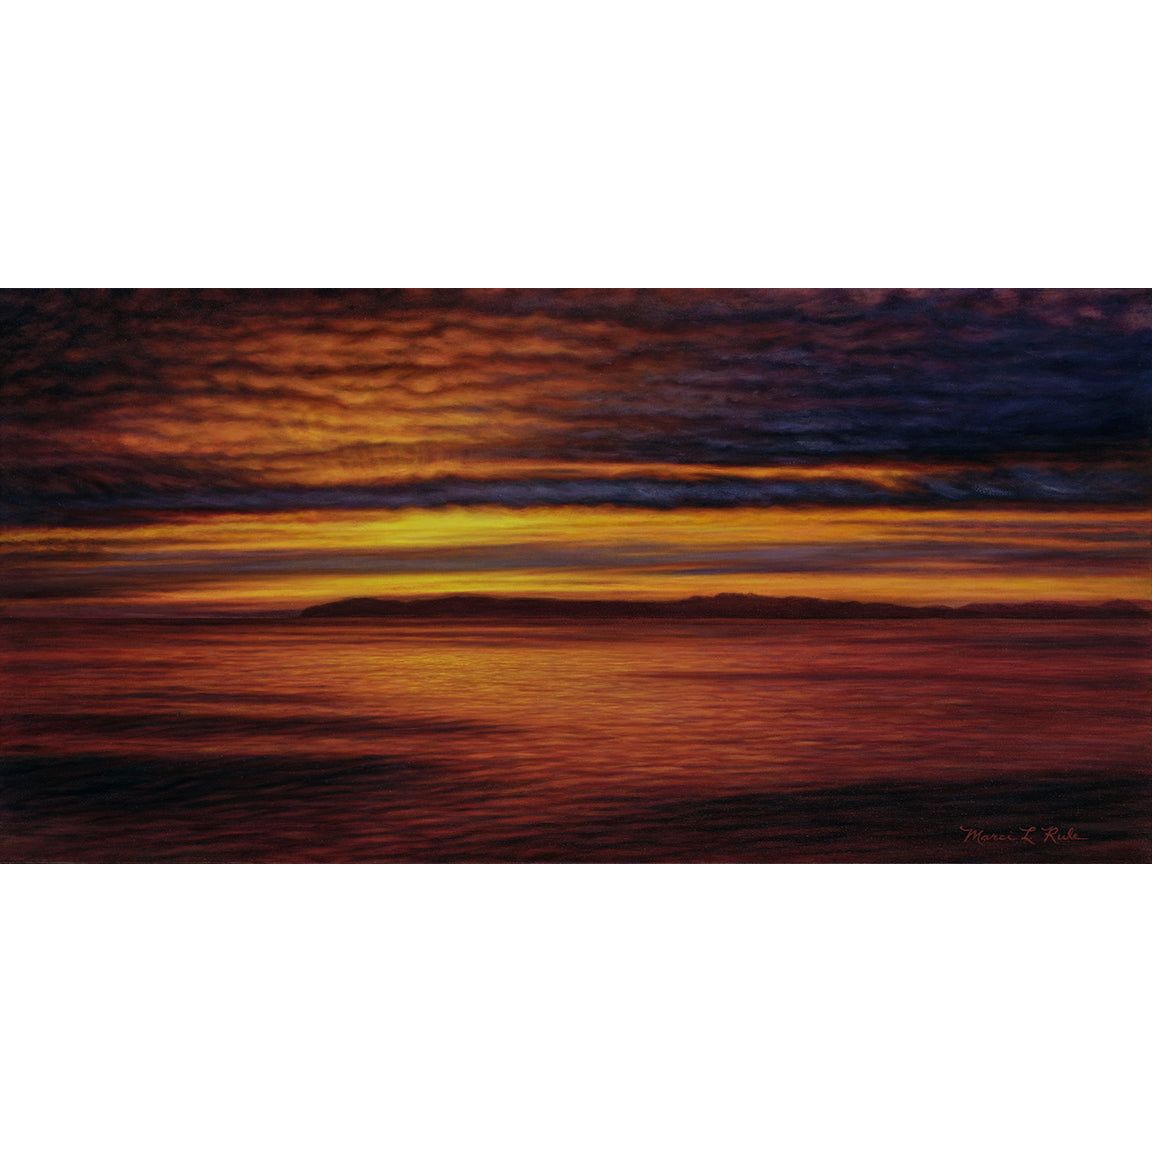 Catalina Sunset- Coastal ocean prints